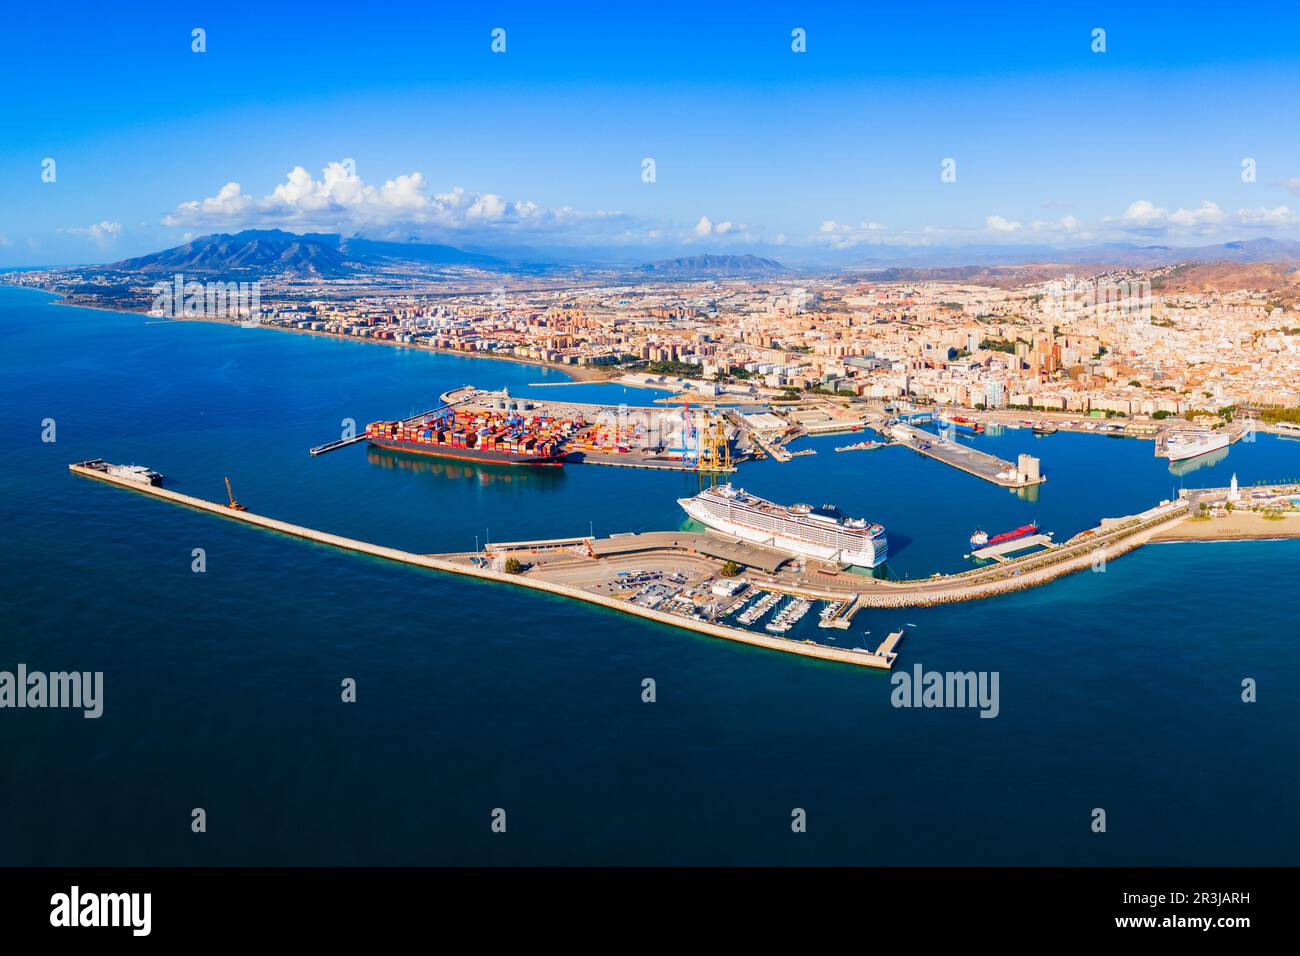 Vista panoramica aerea del porto di Malaga. Malaga è una città della comunità andalusa in Spagna. Foto Stock